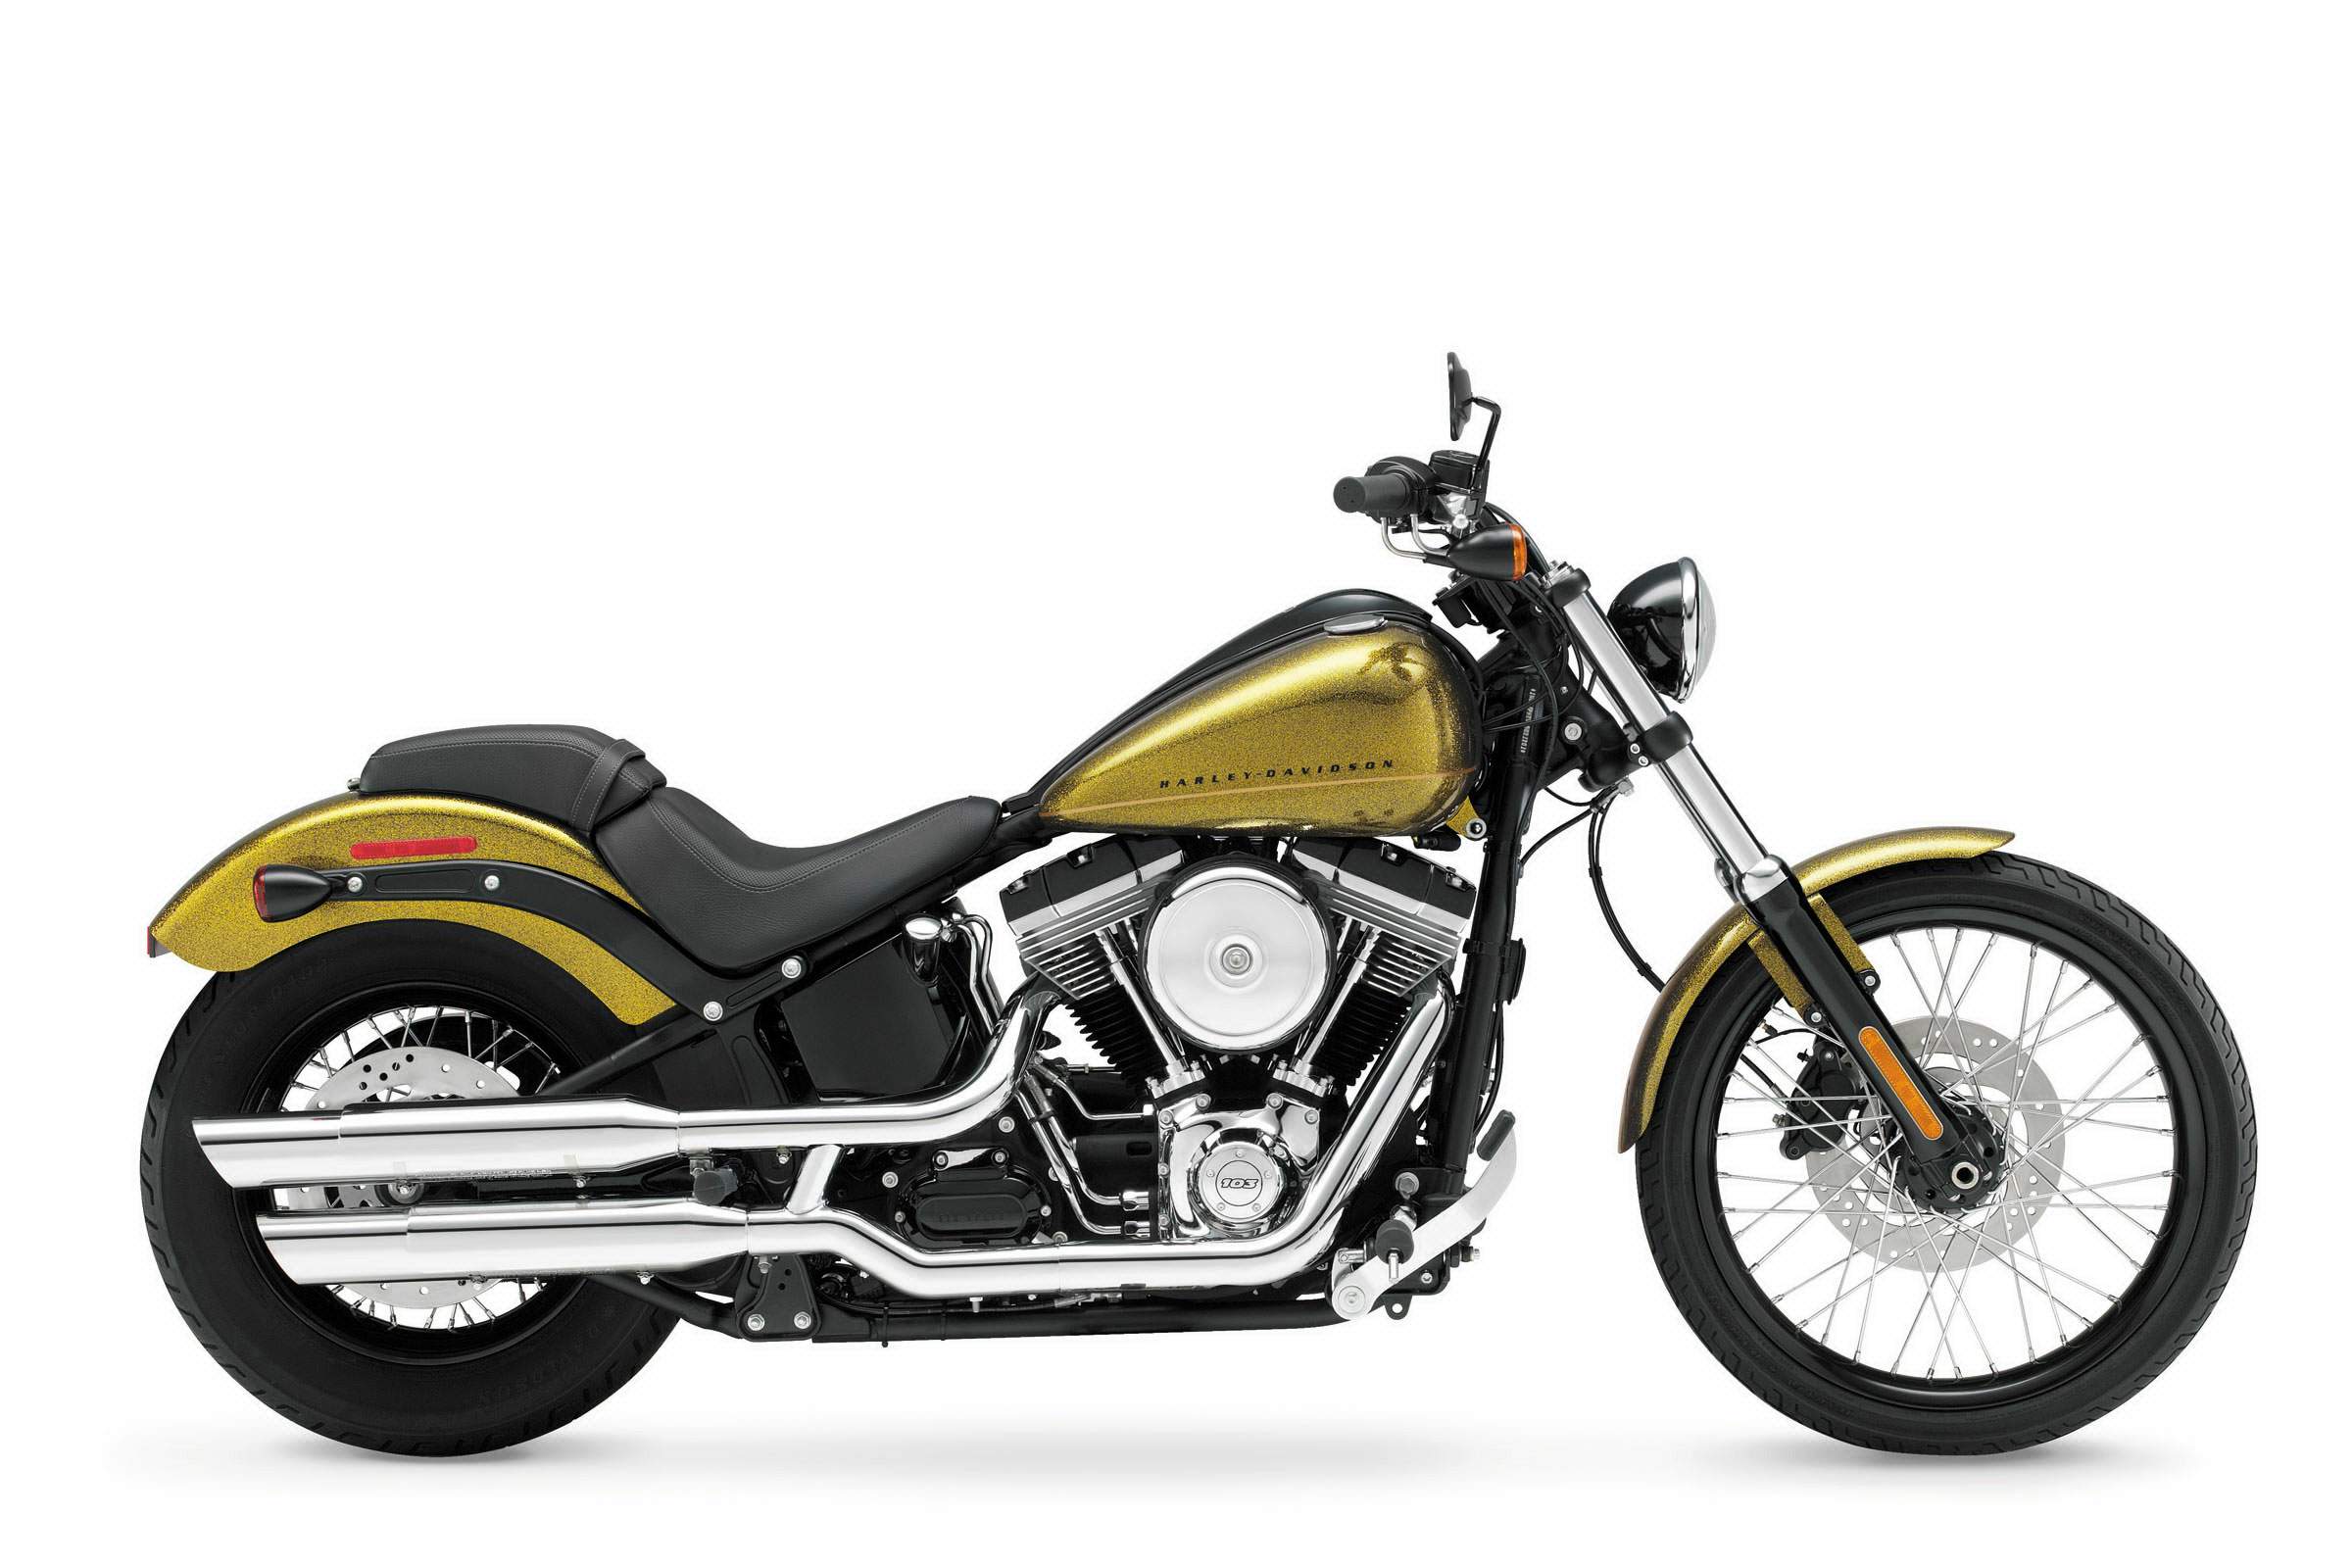 2012 Harley Davidson FXS Softail Blackline